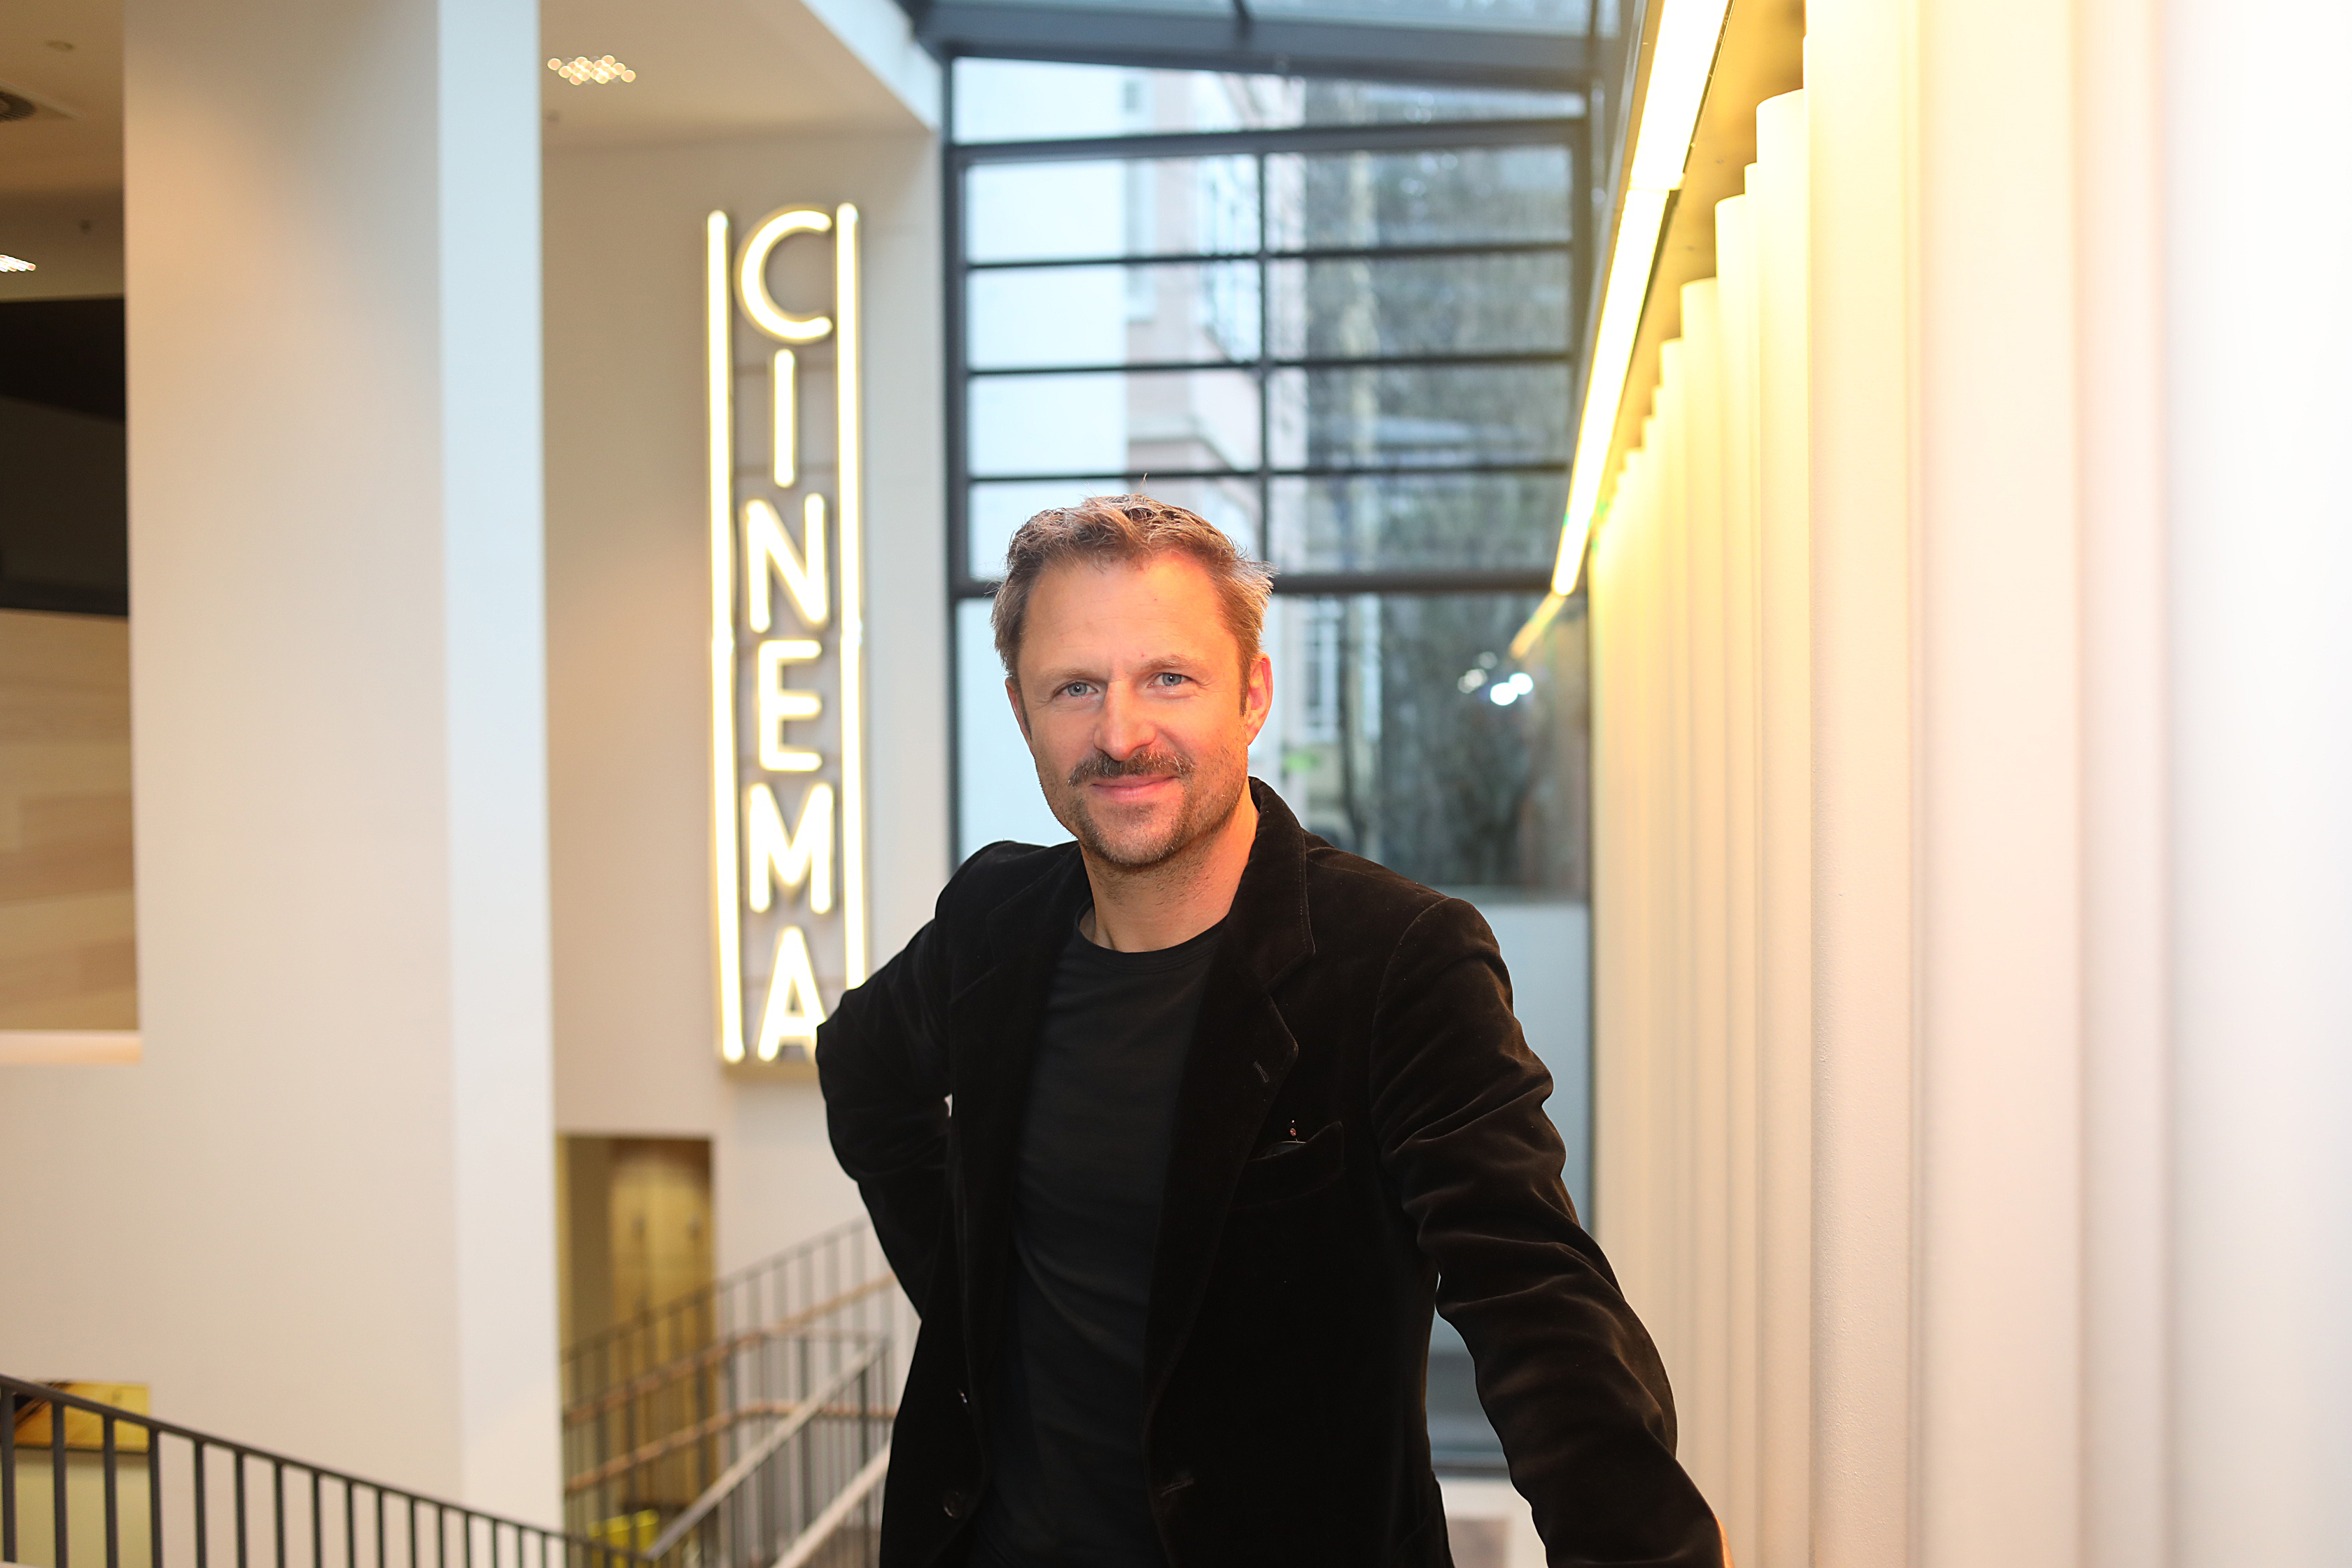 Schauspieler Philipp Hochmair war zu Gast bei der Veranstaltung zur Diskussion zum Film "Die Wannseekonferenz"